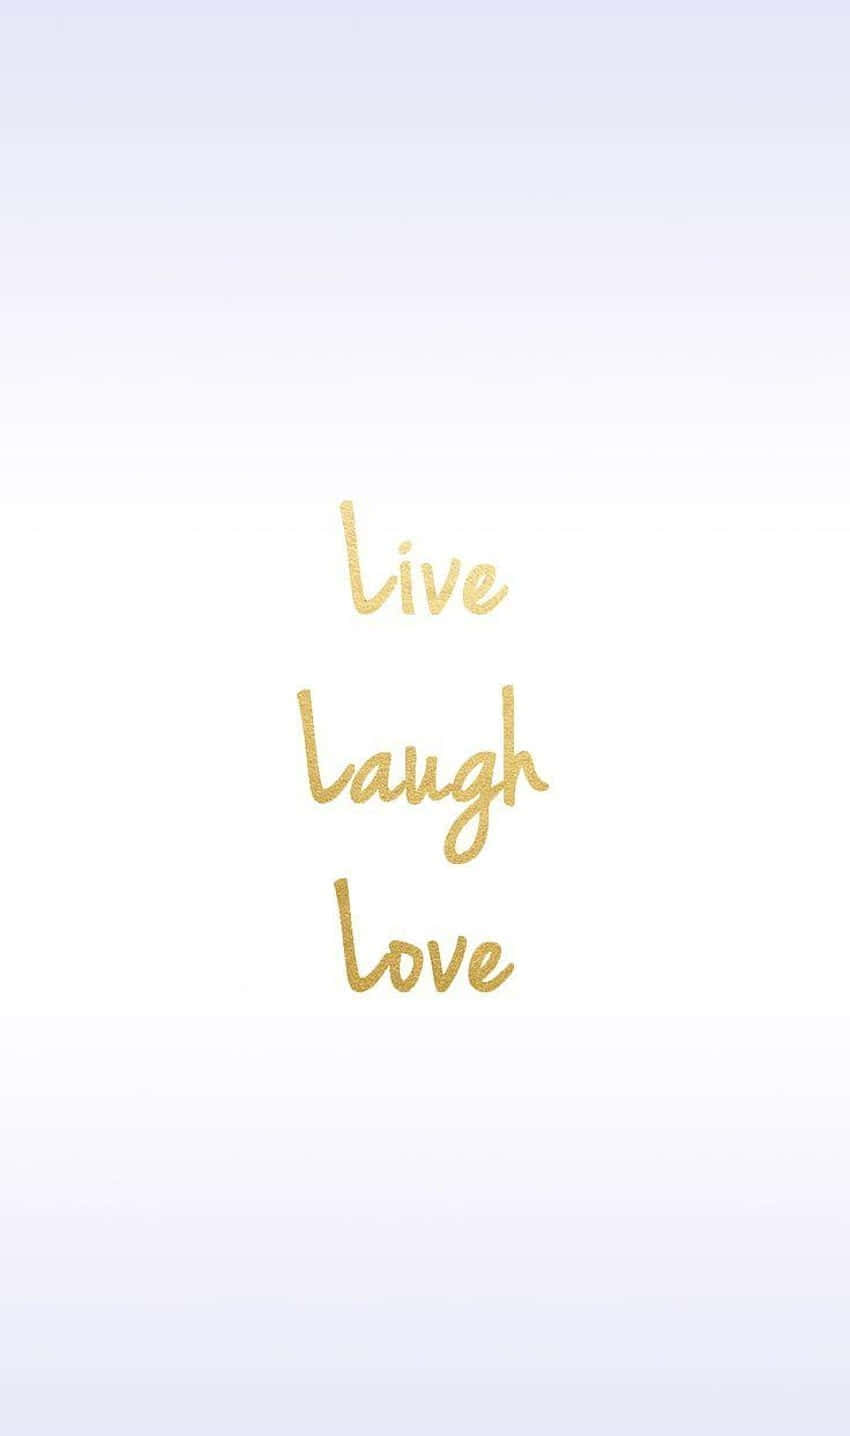 Live Laugh Love Gold Foil Wallpaper